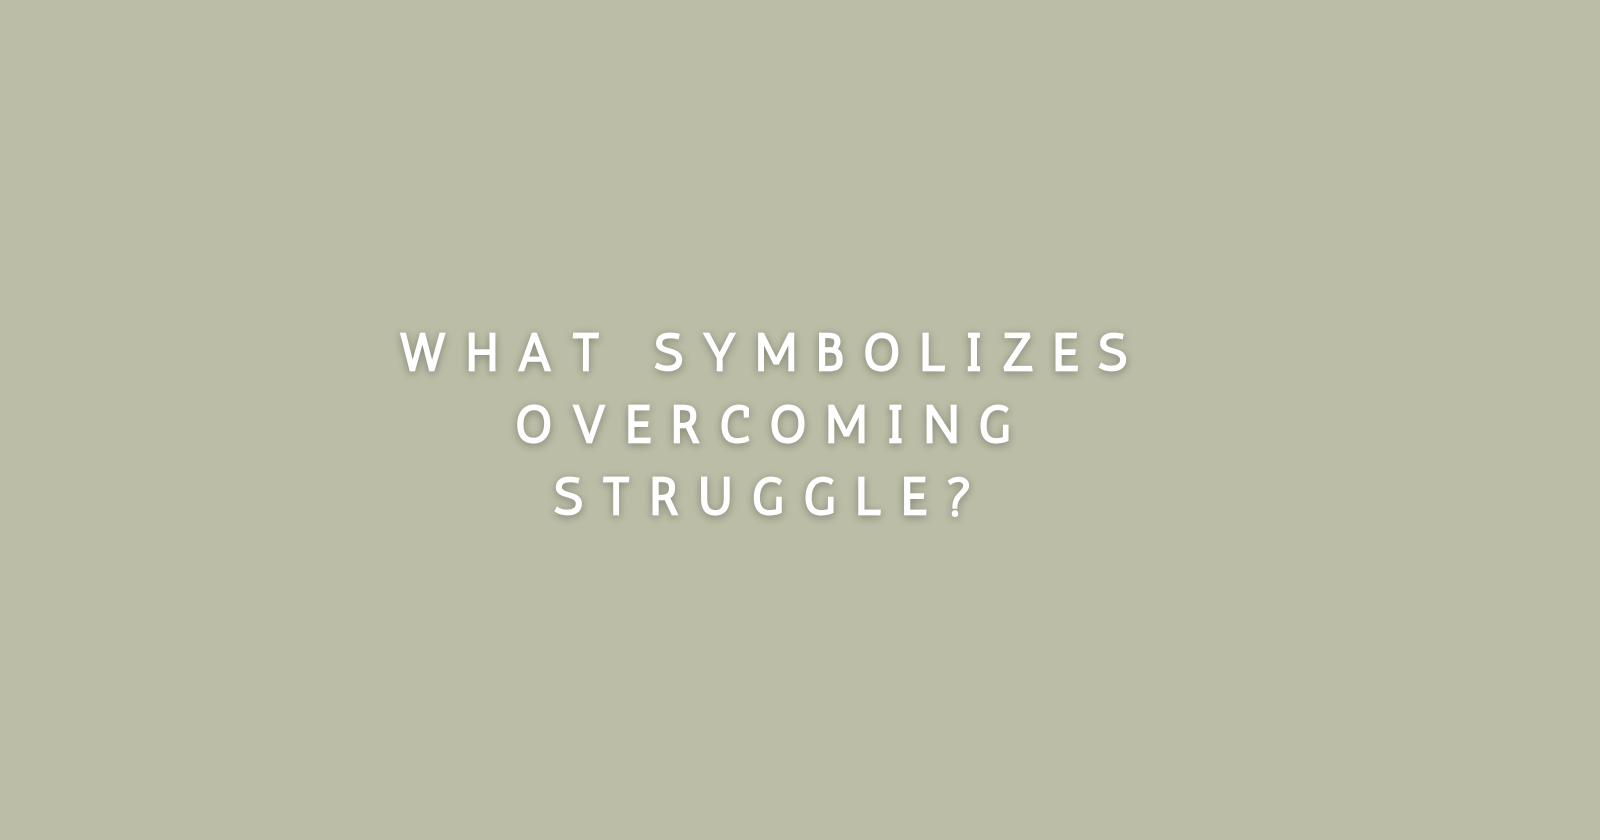 What symbolizes overcoming struggle